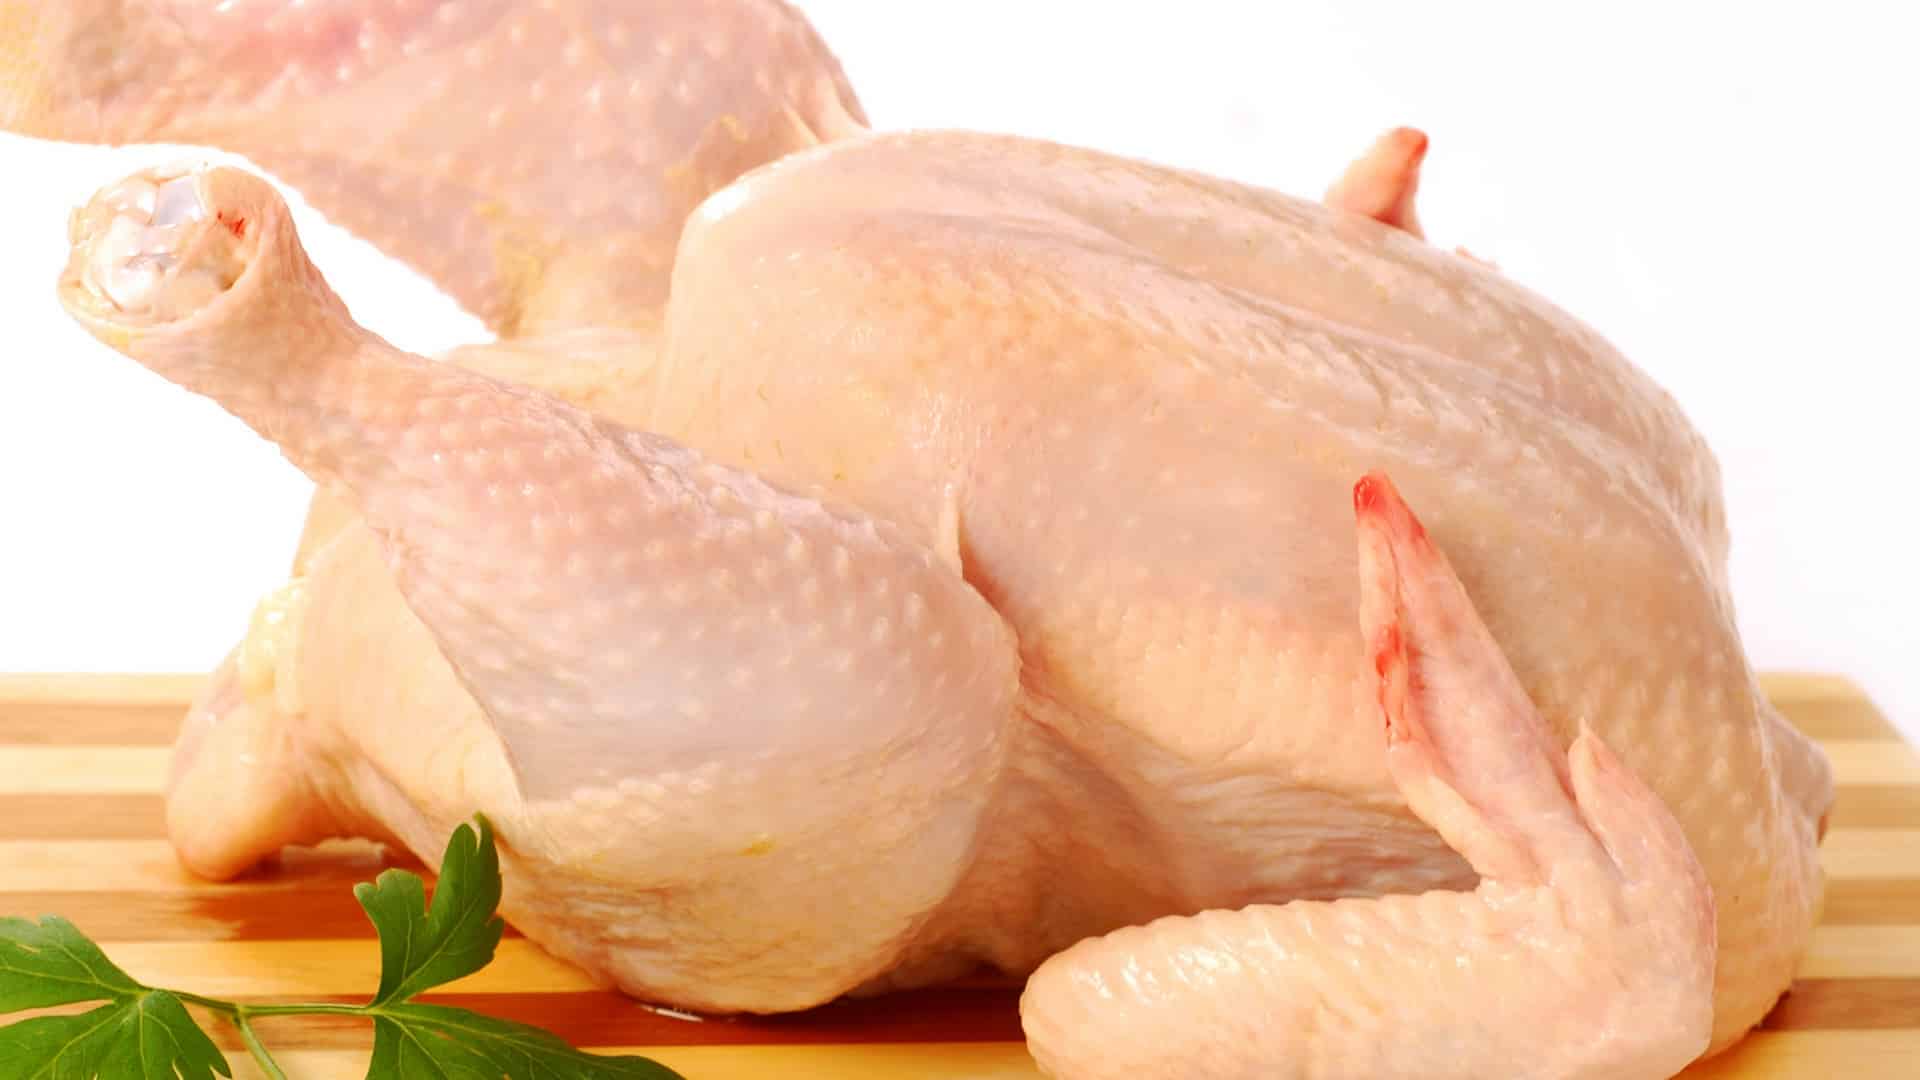 Veja a maneira correta de descongelar o frango para evitar contaminação